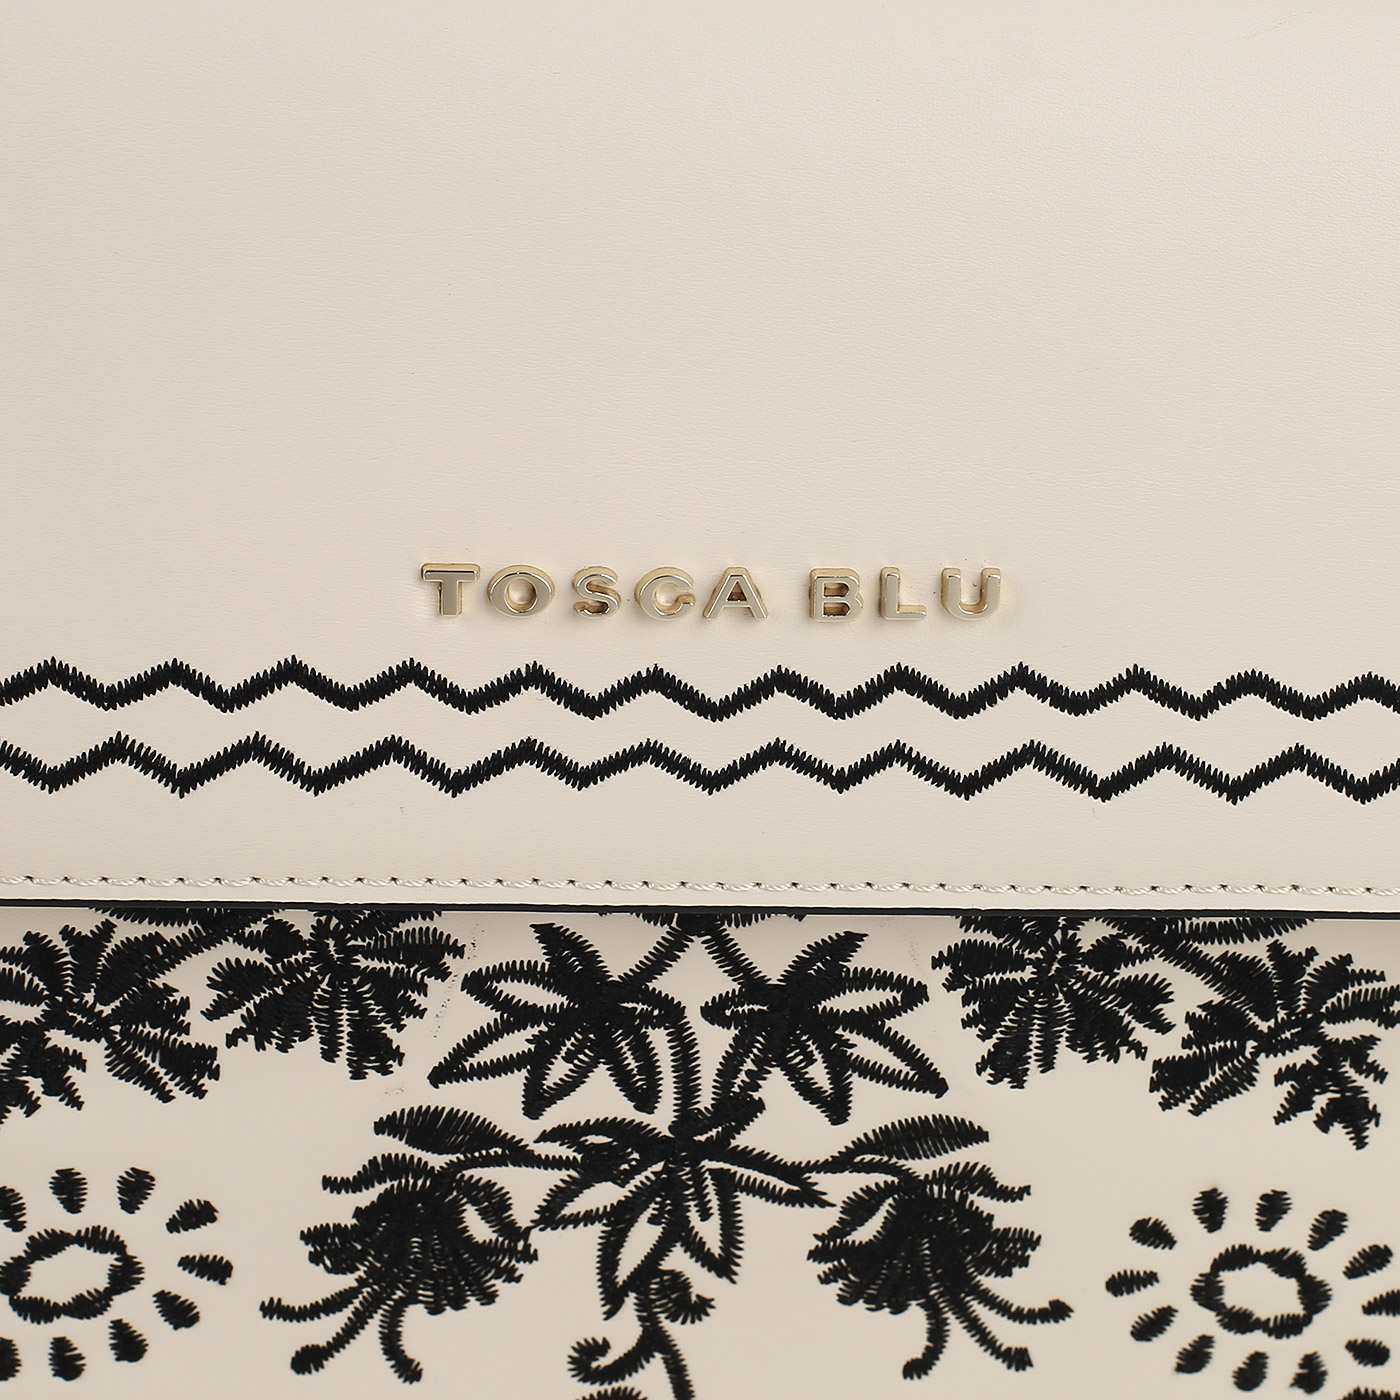 Кожаная сумка с вышивкой Tosca Blu Bouganvillea